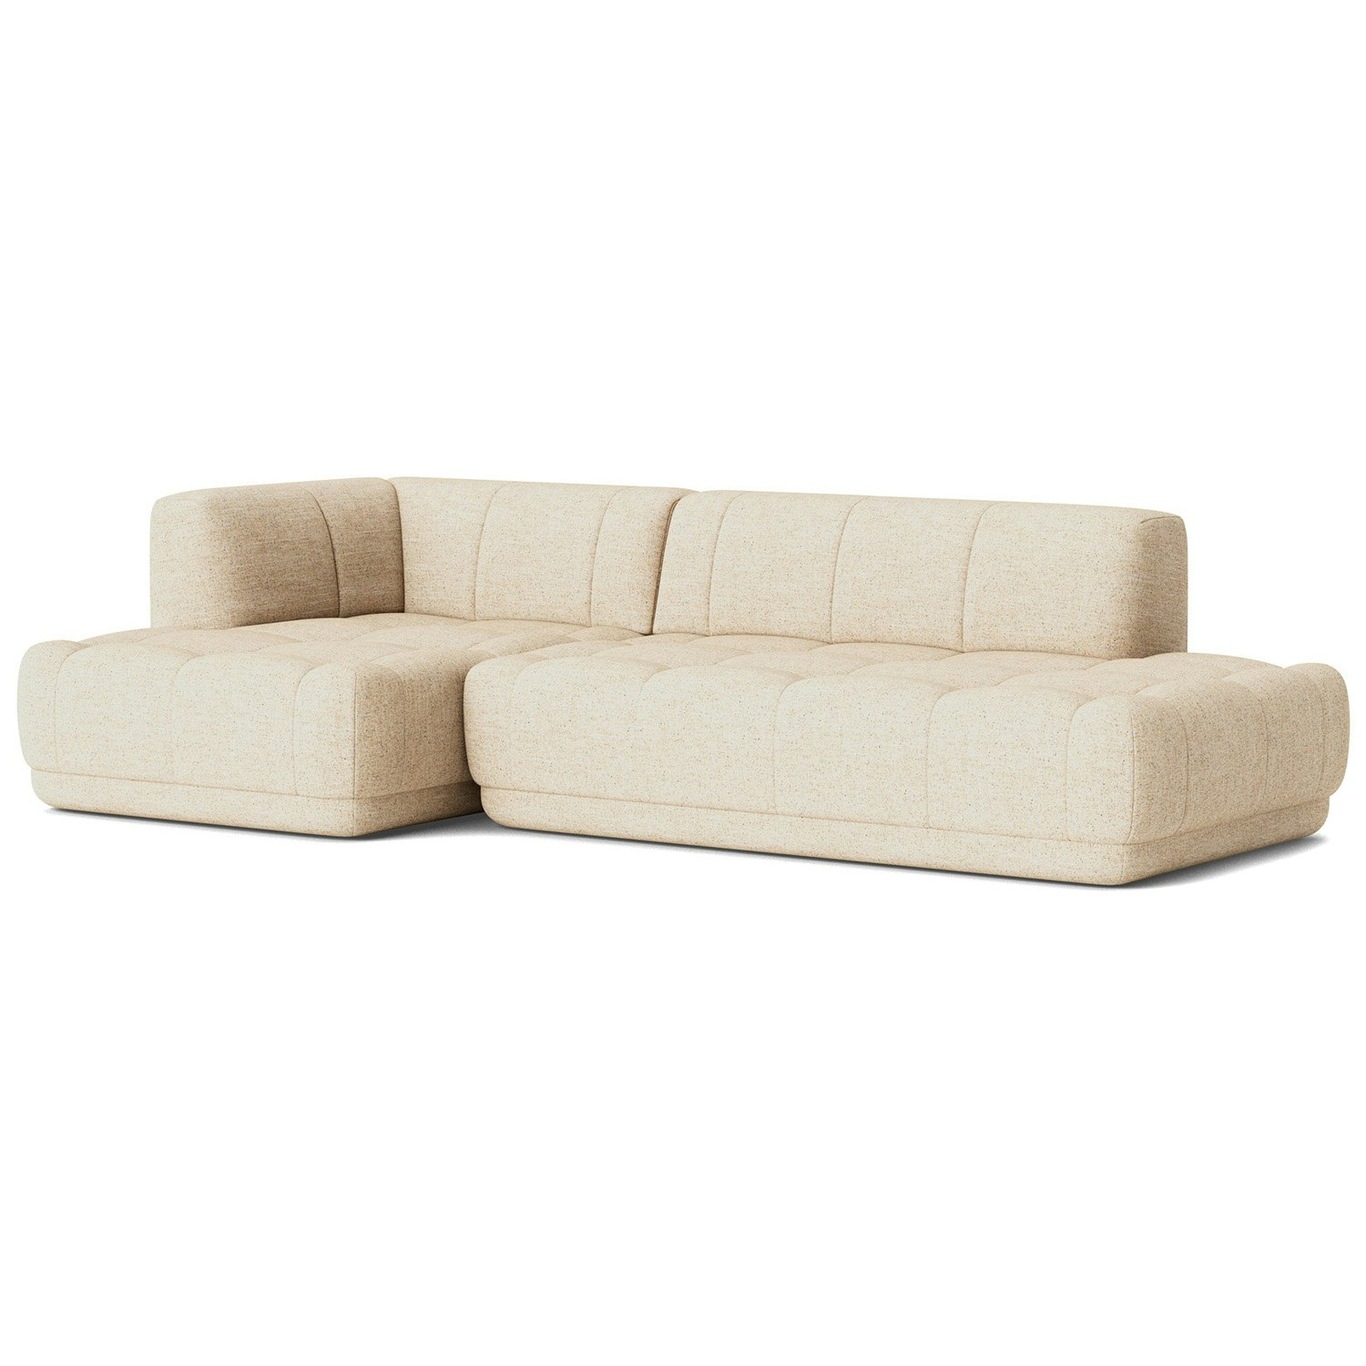 Quilton 3.5-Seater Sofa Configuration 21 Left, Bolgheri LGG60